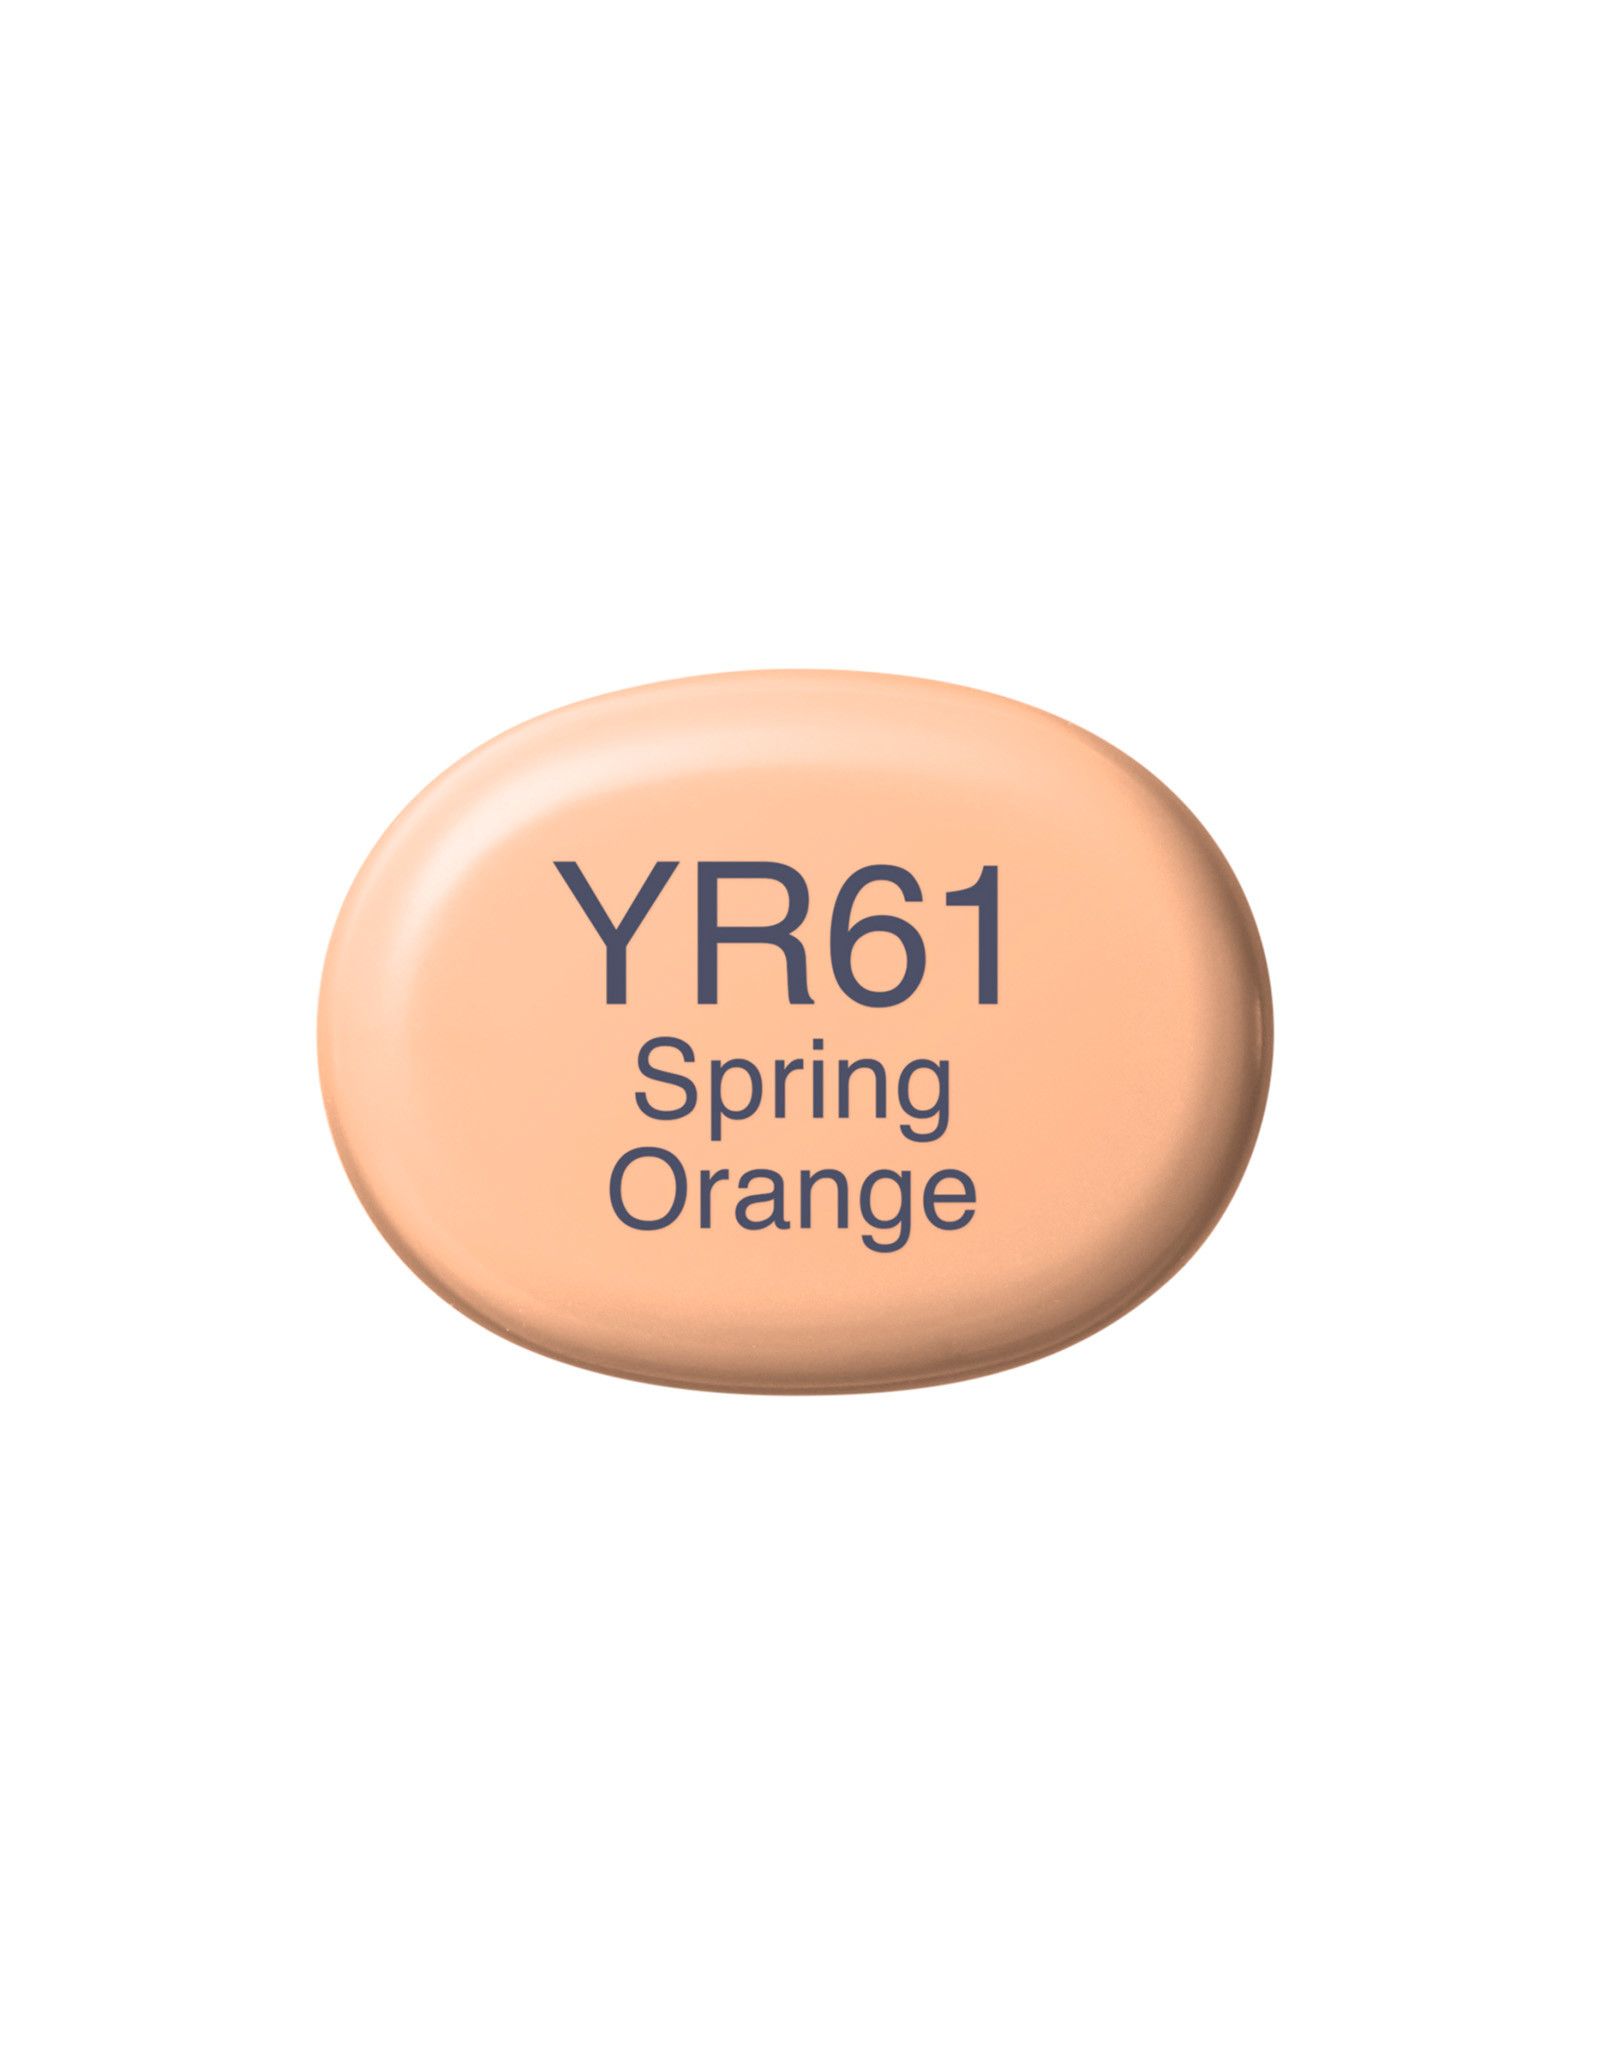 COPIC COPIC Sketch Marker YR61 Spring Orange